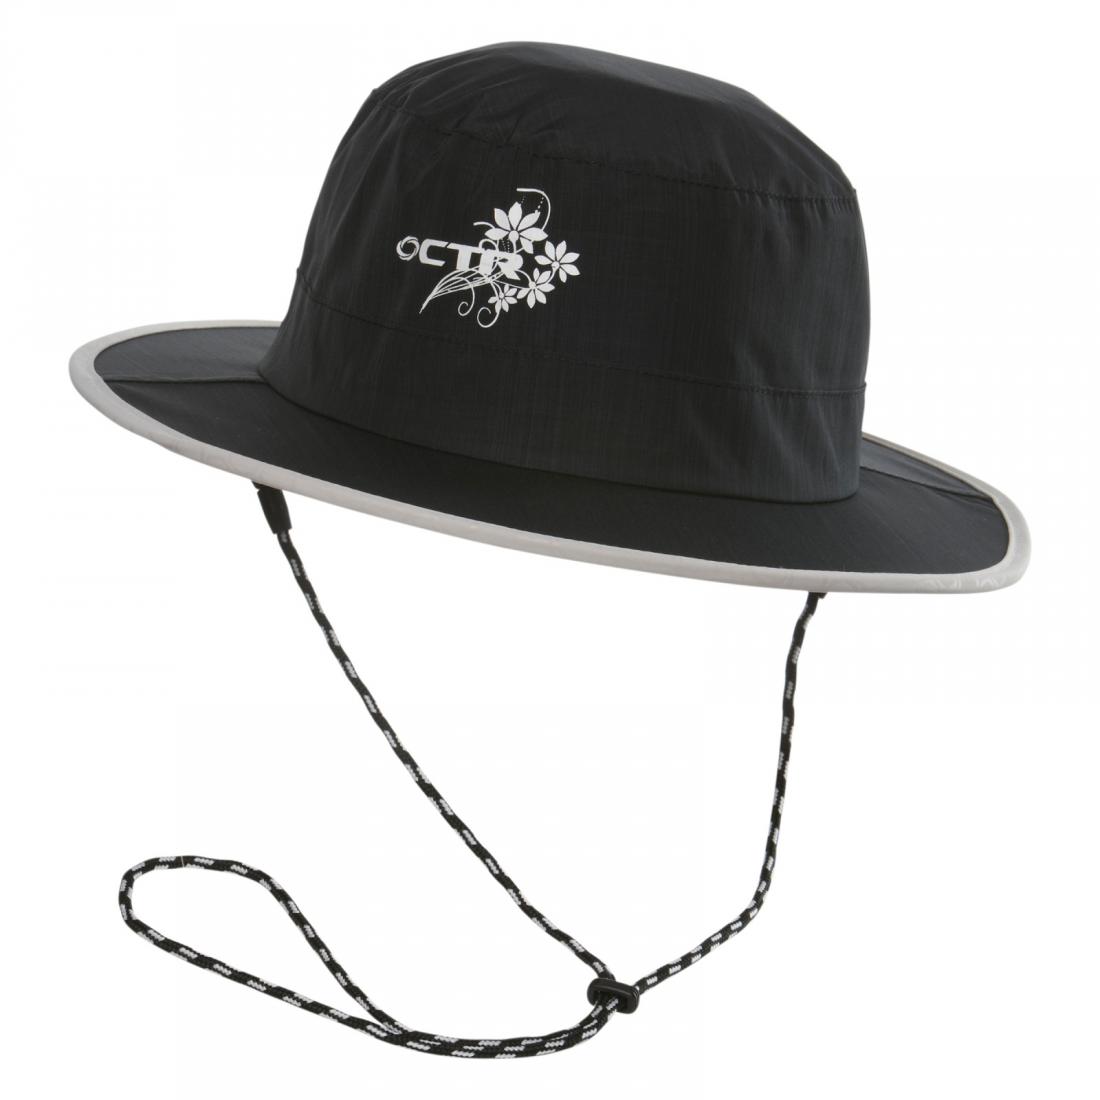 Панама Chaos  Stratus Bucket Hat (женс)